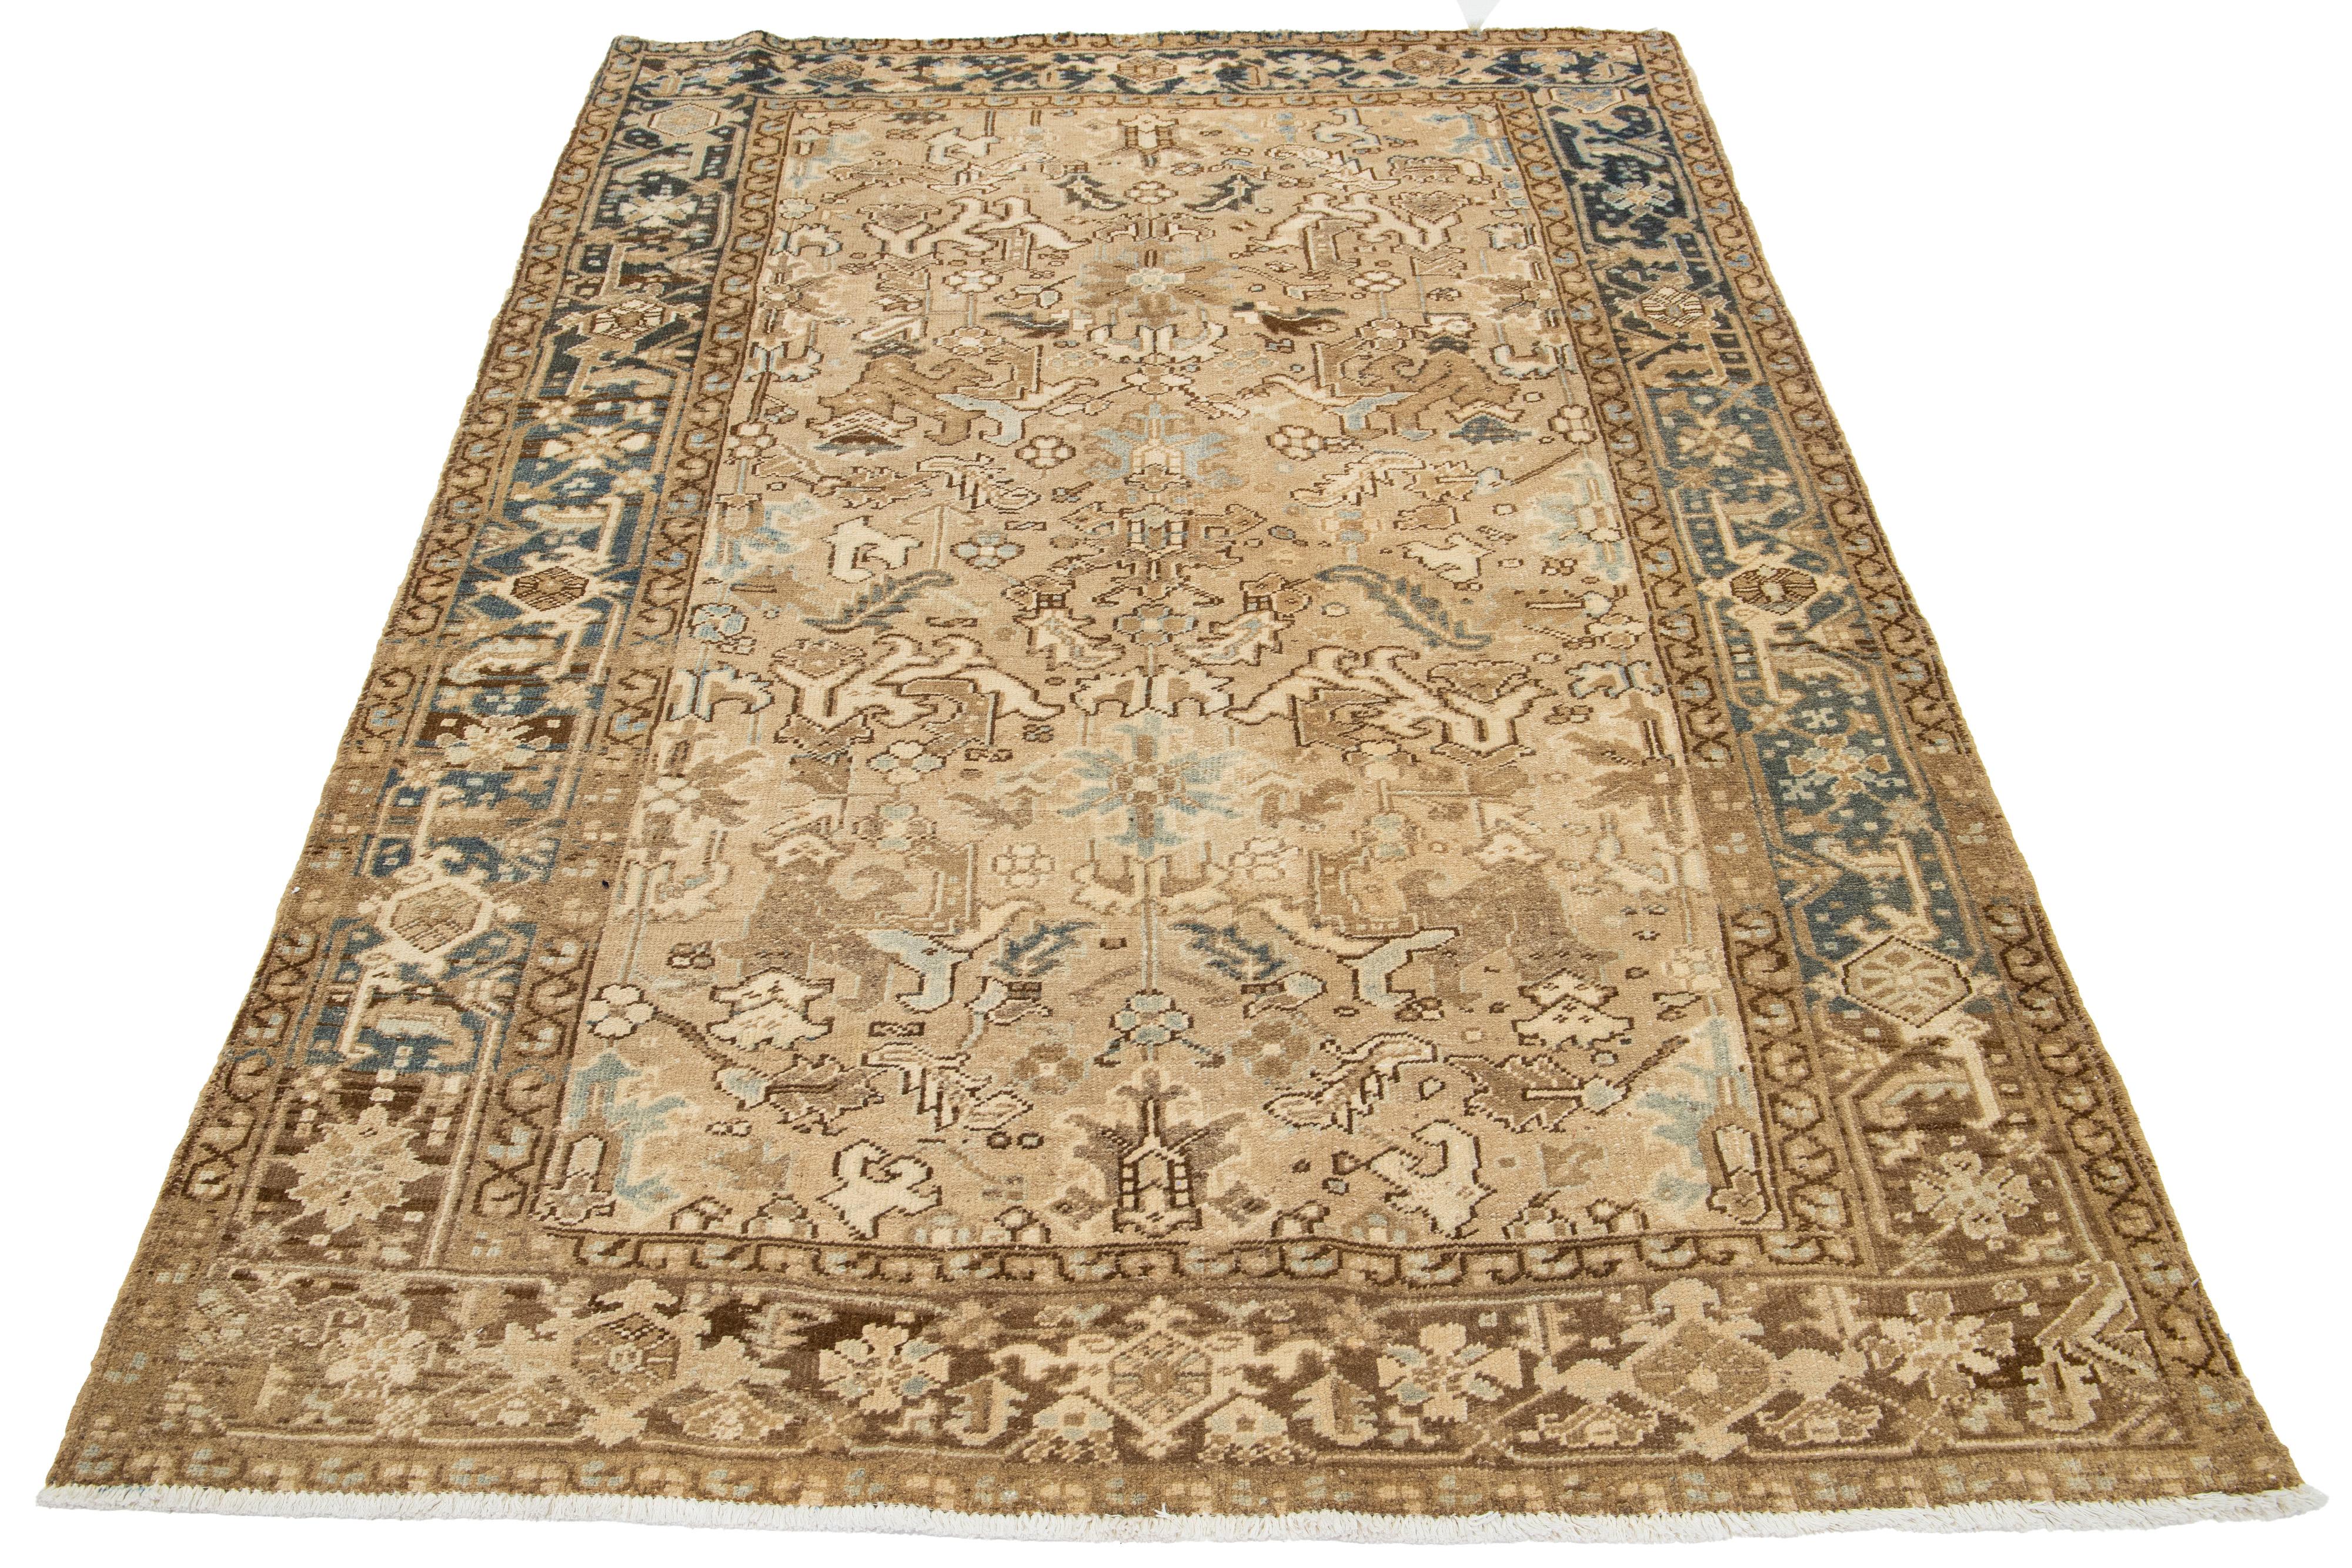 Ein antiker Heriz-Teppich aus Persien wird aus Wolle handgeknüpft. Es hat ein beiges Feld mit einem blauen und braunen Allover-Muster.

Dieser Teppich misst 5'11' x 8'10